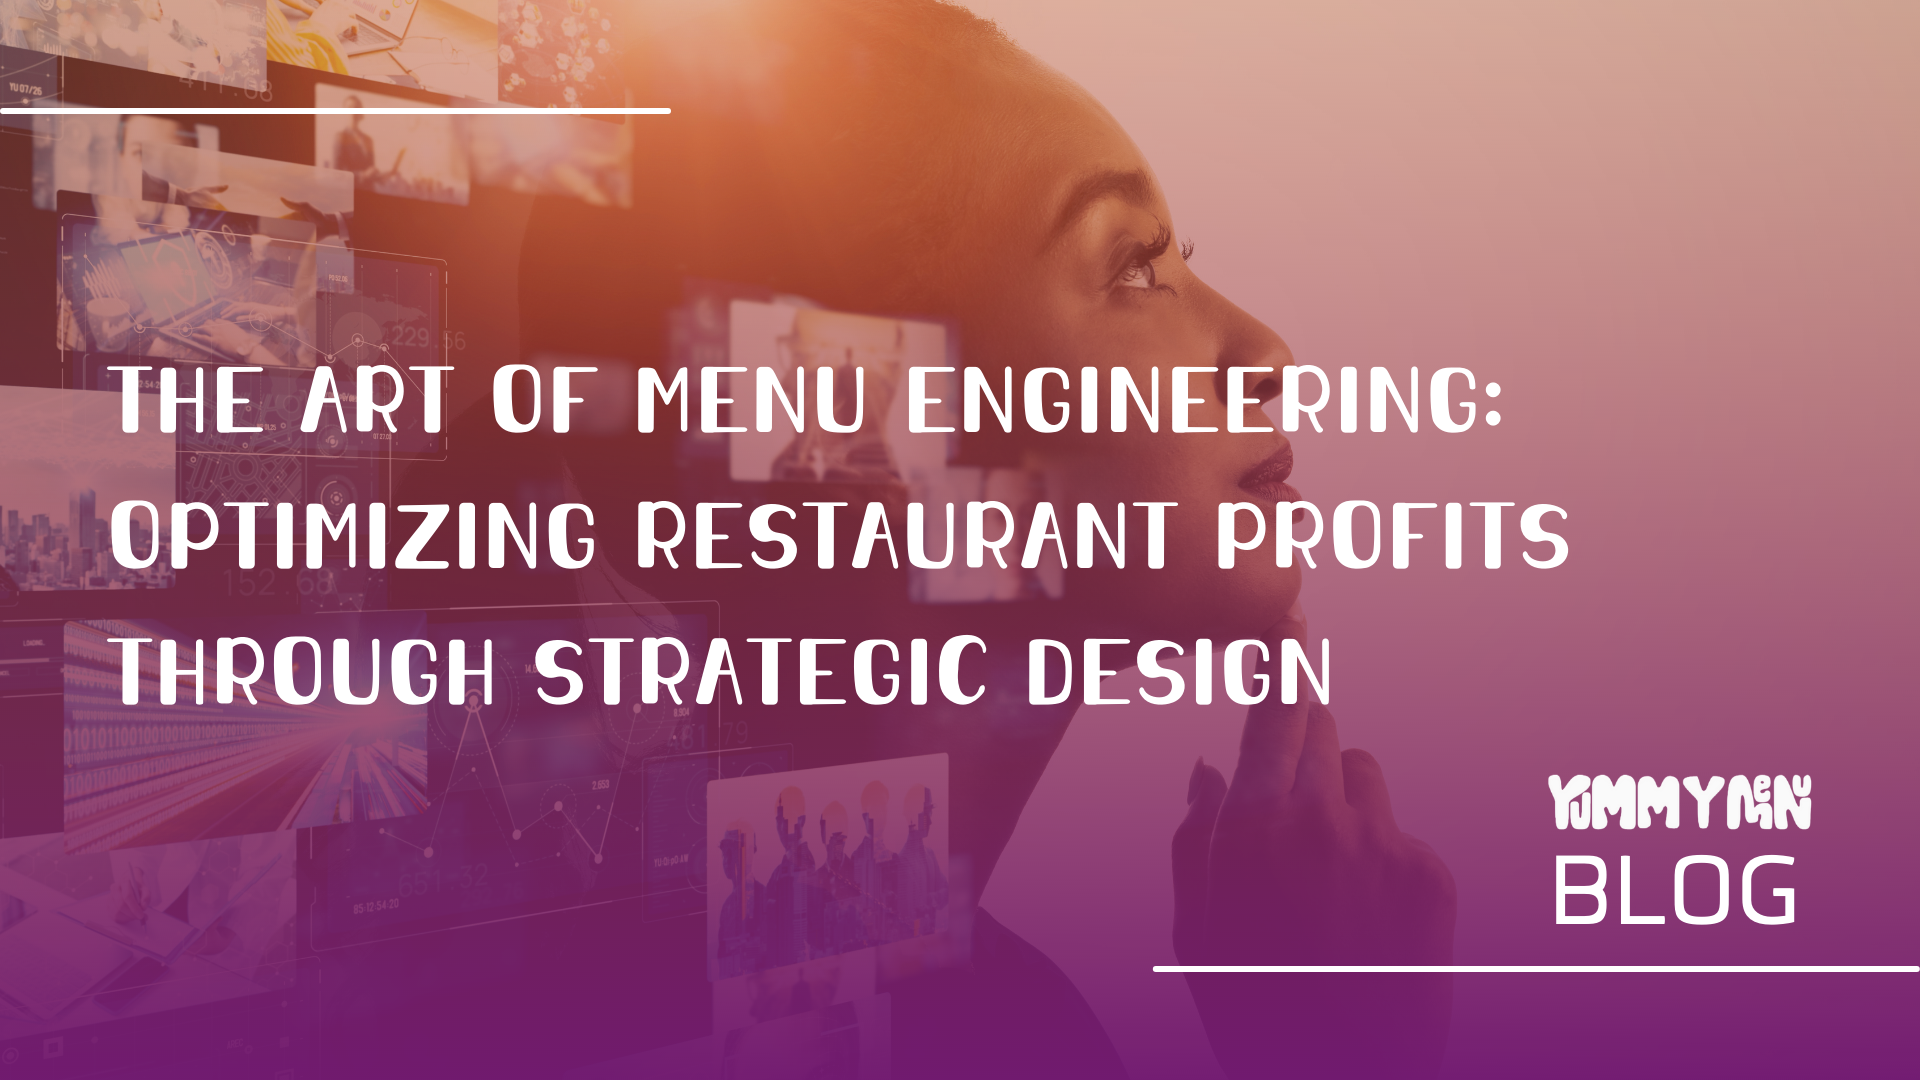 Menü Mühendisliği Sanatı: Stratejik Tasarım Yoluyla Restoran Karlarını Optimize Etmek